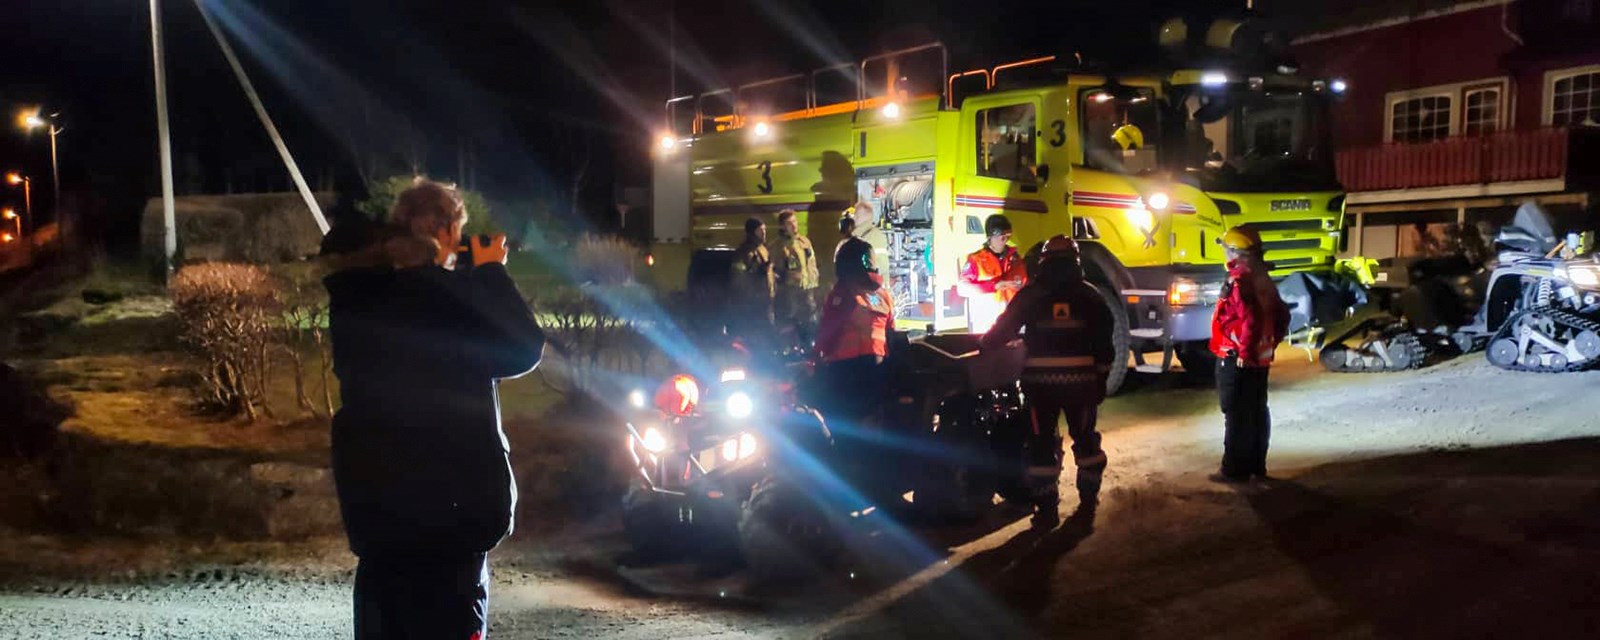 Mannskaper fra brannvesen og Røde Kors står rundt ATV og brannbil i mørket.